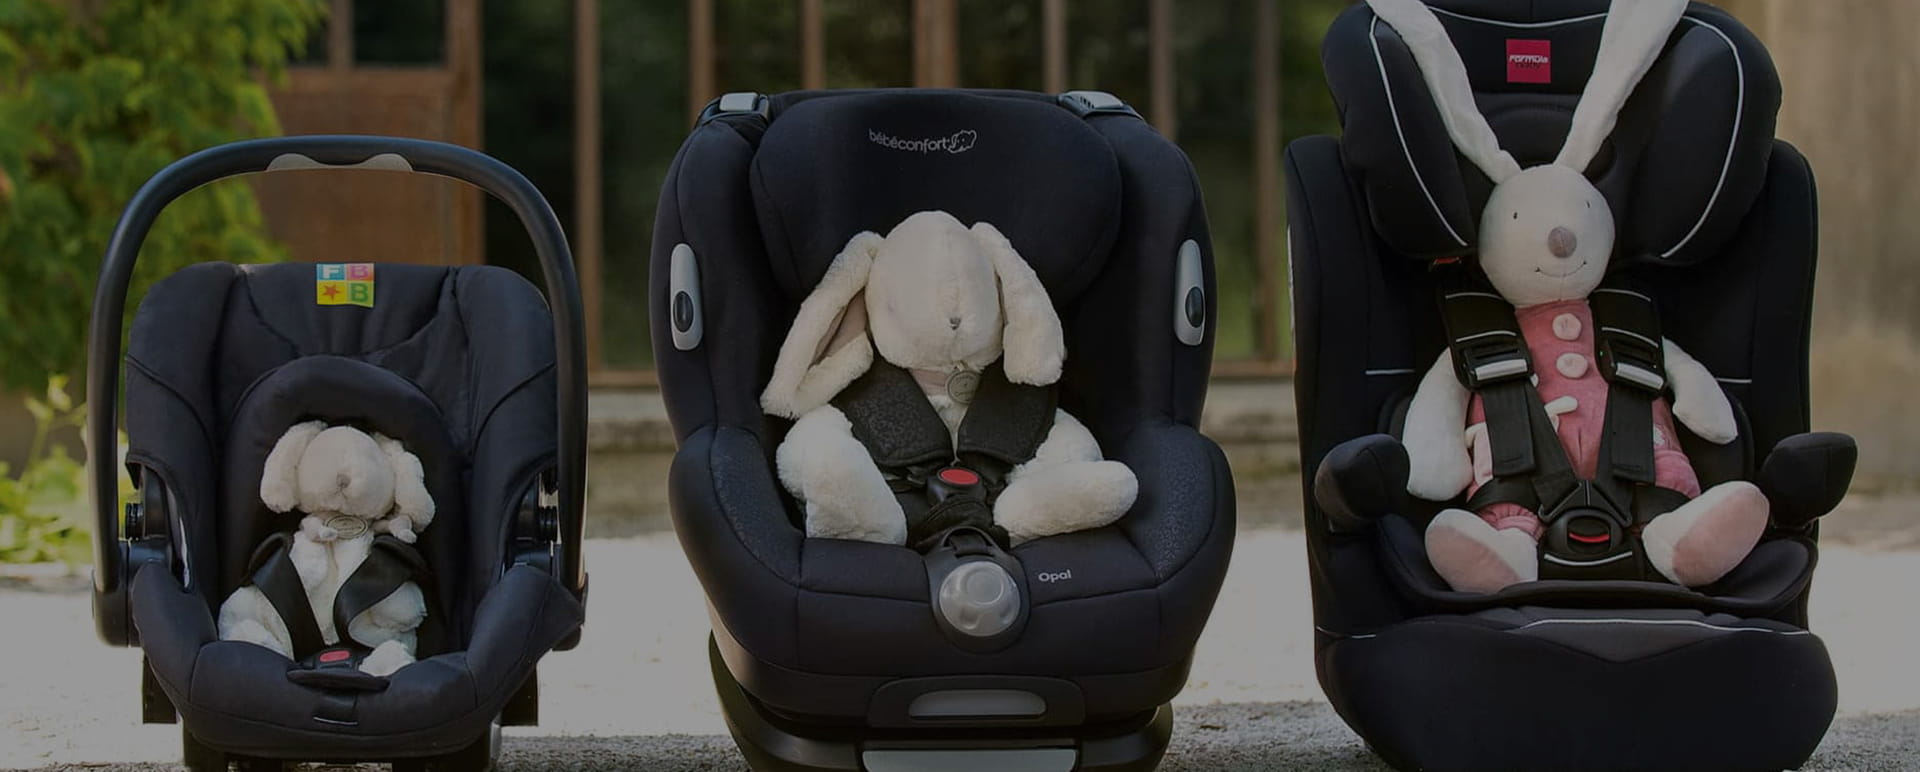 Siège auto bebe confort - Équipement auto